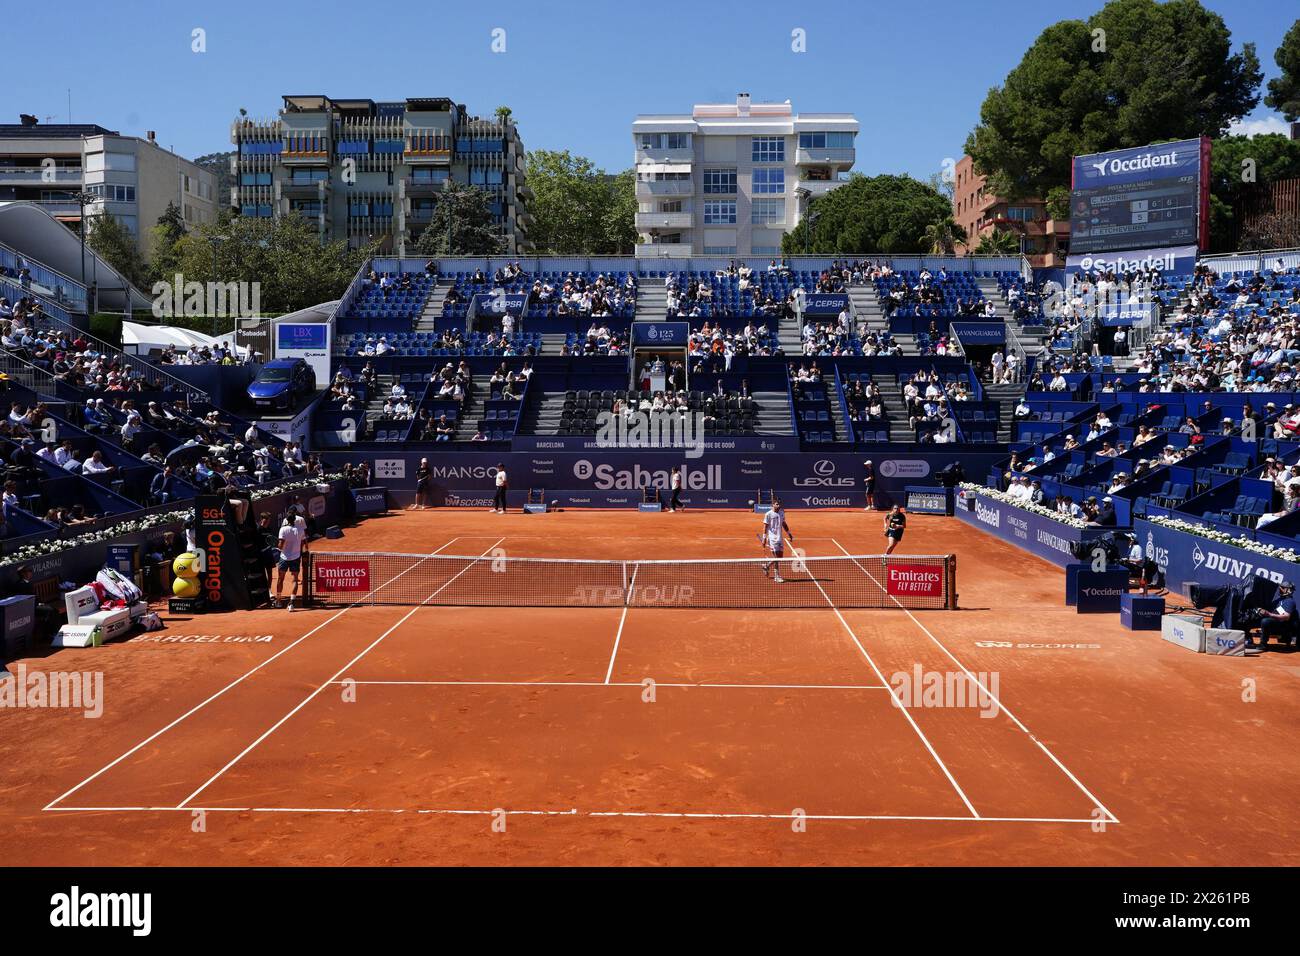 19 avril 2024 ; Real Club de Tenis Barcelona 1899, Barcelone, Espagne : ATP 500 Barcelona Open Banc Sabadell Tennis, jour 5 ; le court de terre battue Banque D'Images